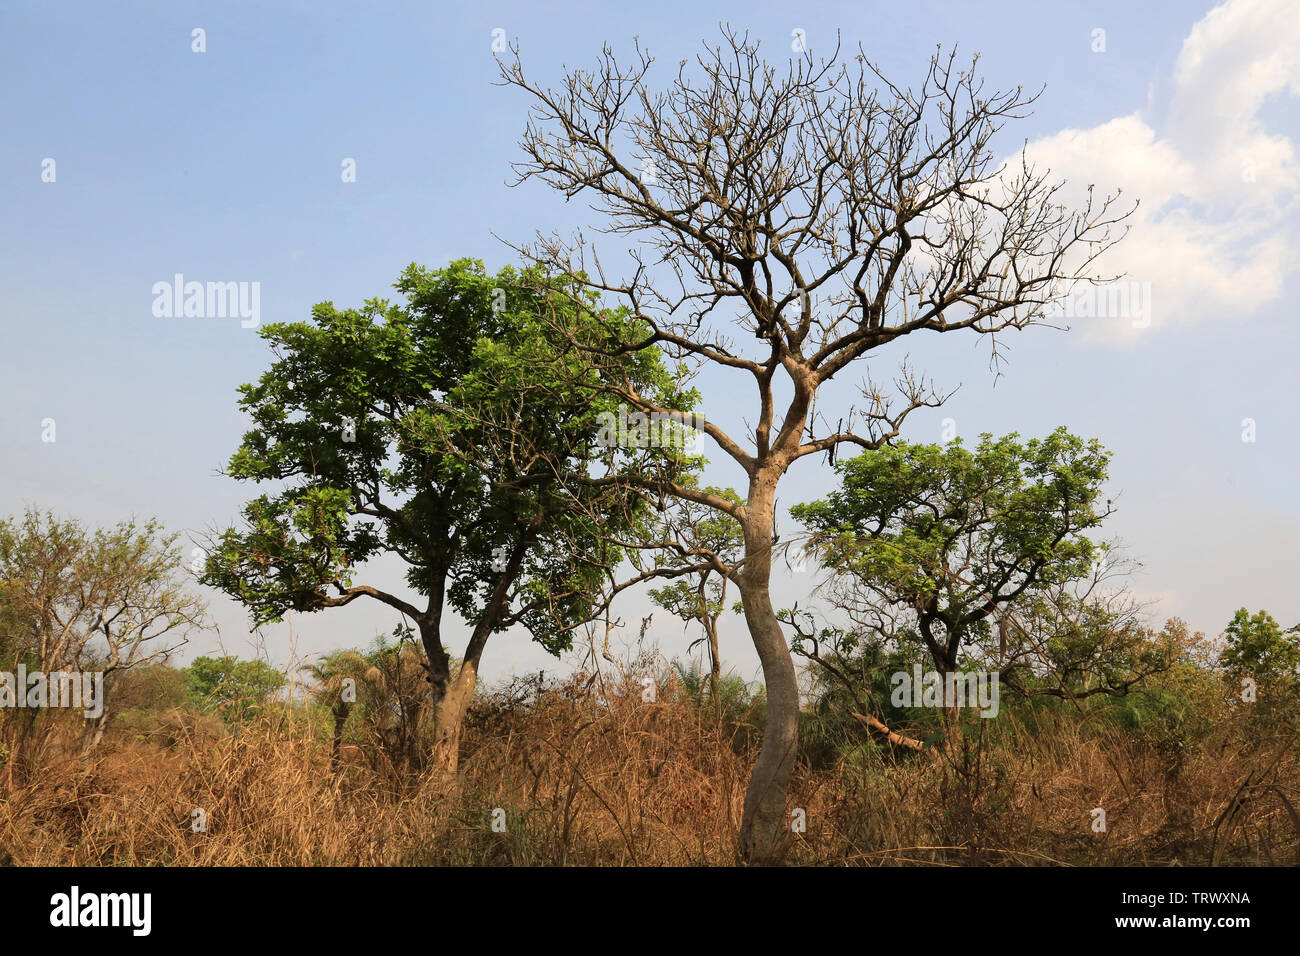 La brousse. Datcha Attikpayé. Il Togo. Afrique de l'Ouest Foto Stock